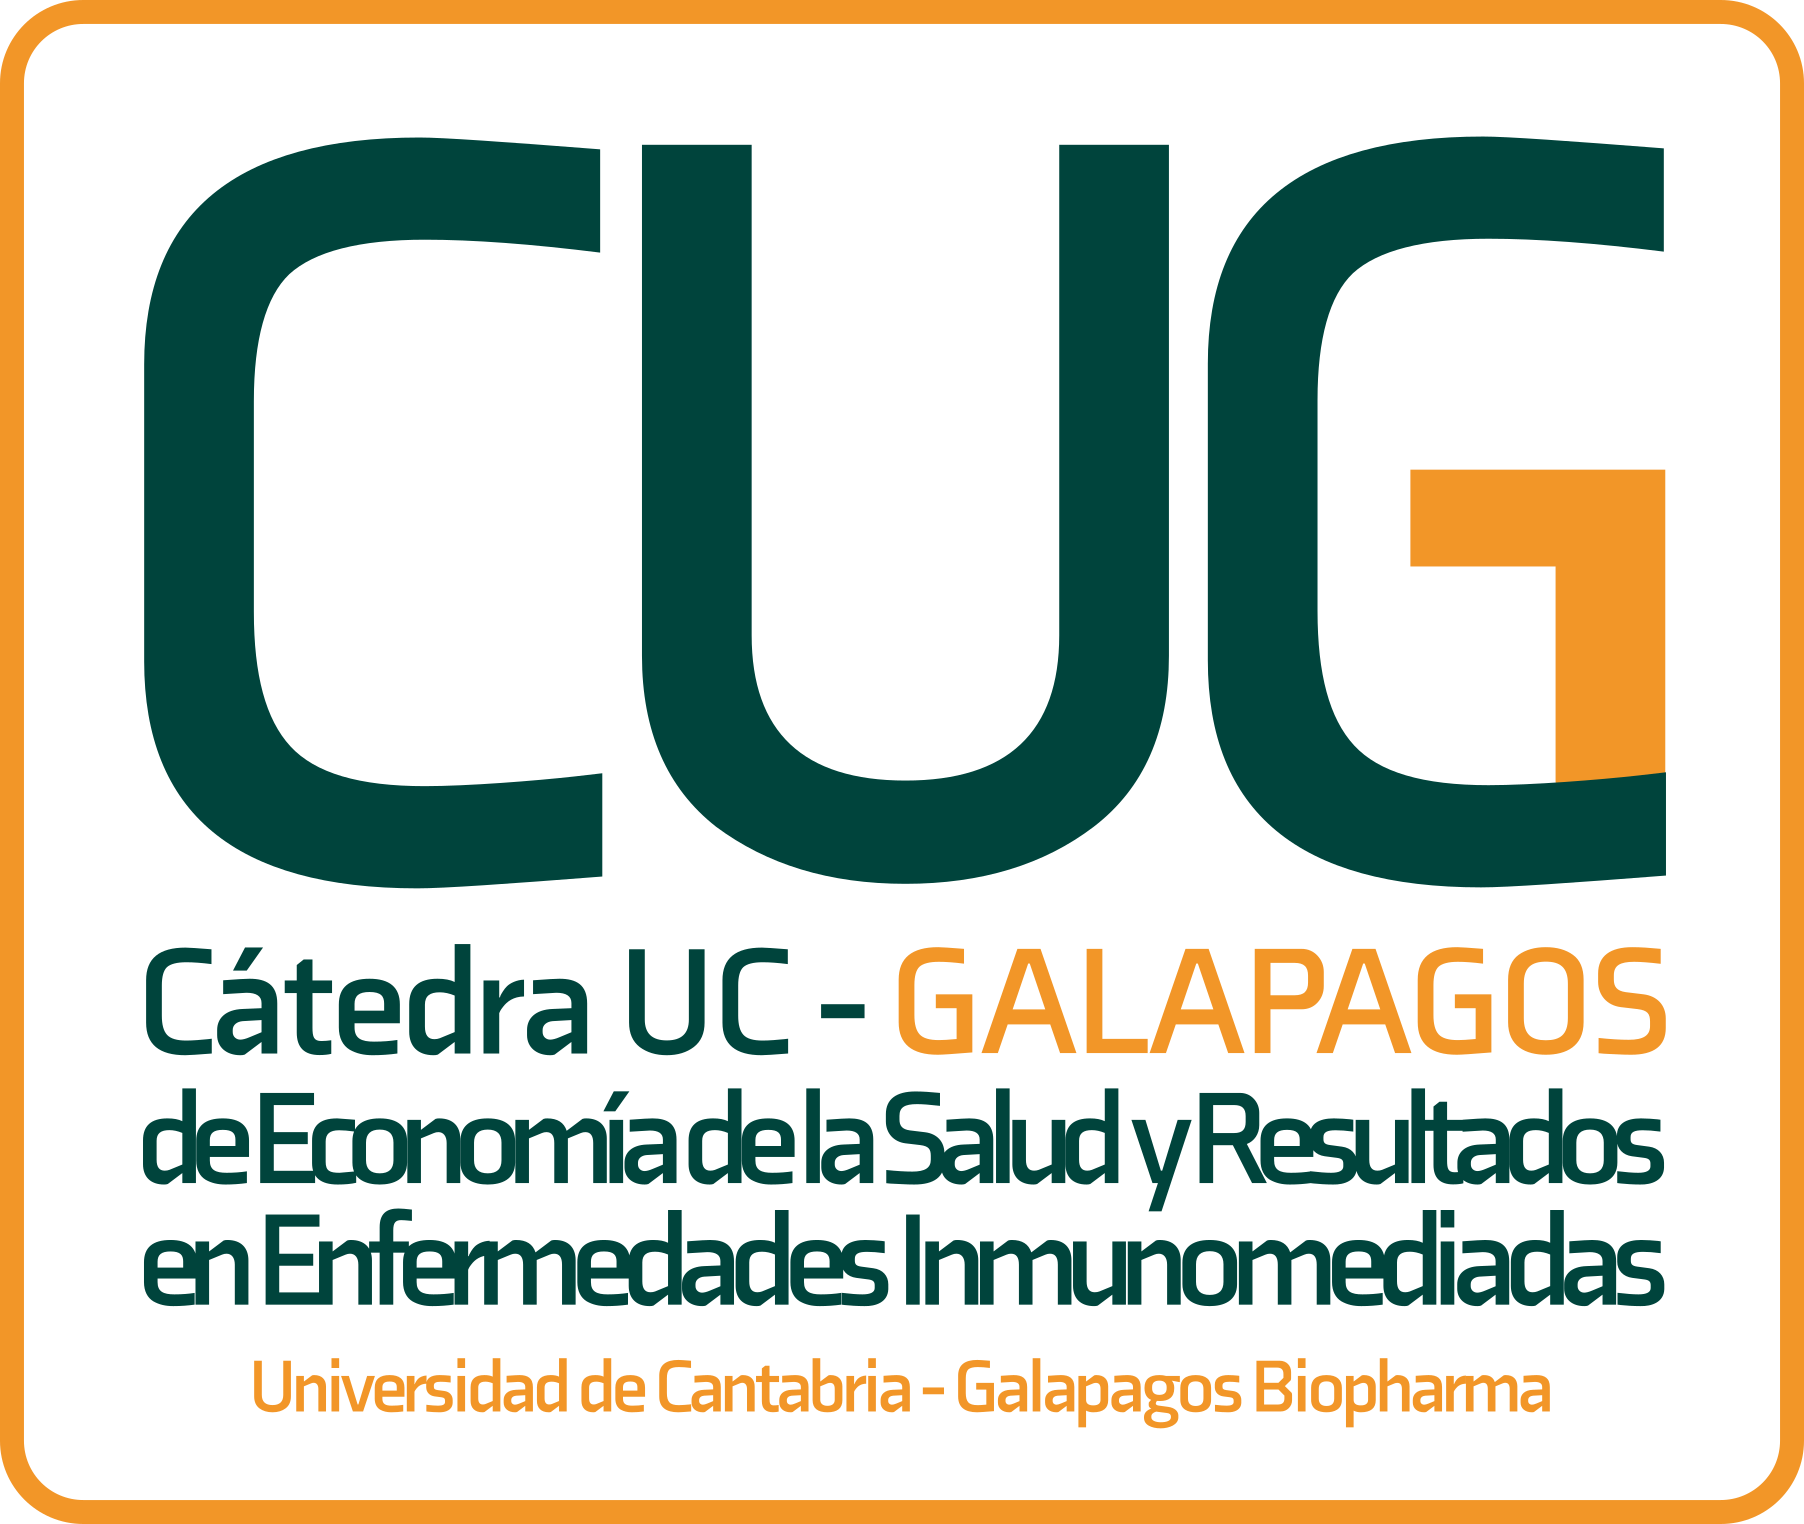 CATEDRA GALAPAGOS UC ECONOMIA DE LA SALUD Y RESULTADOS EN ENFERMEDADES INMUNOMEDIADAS